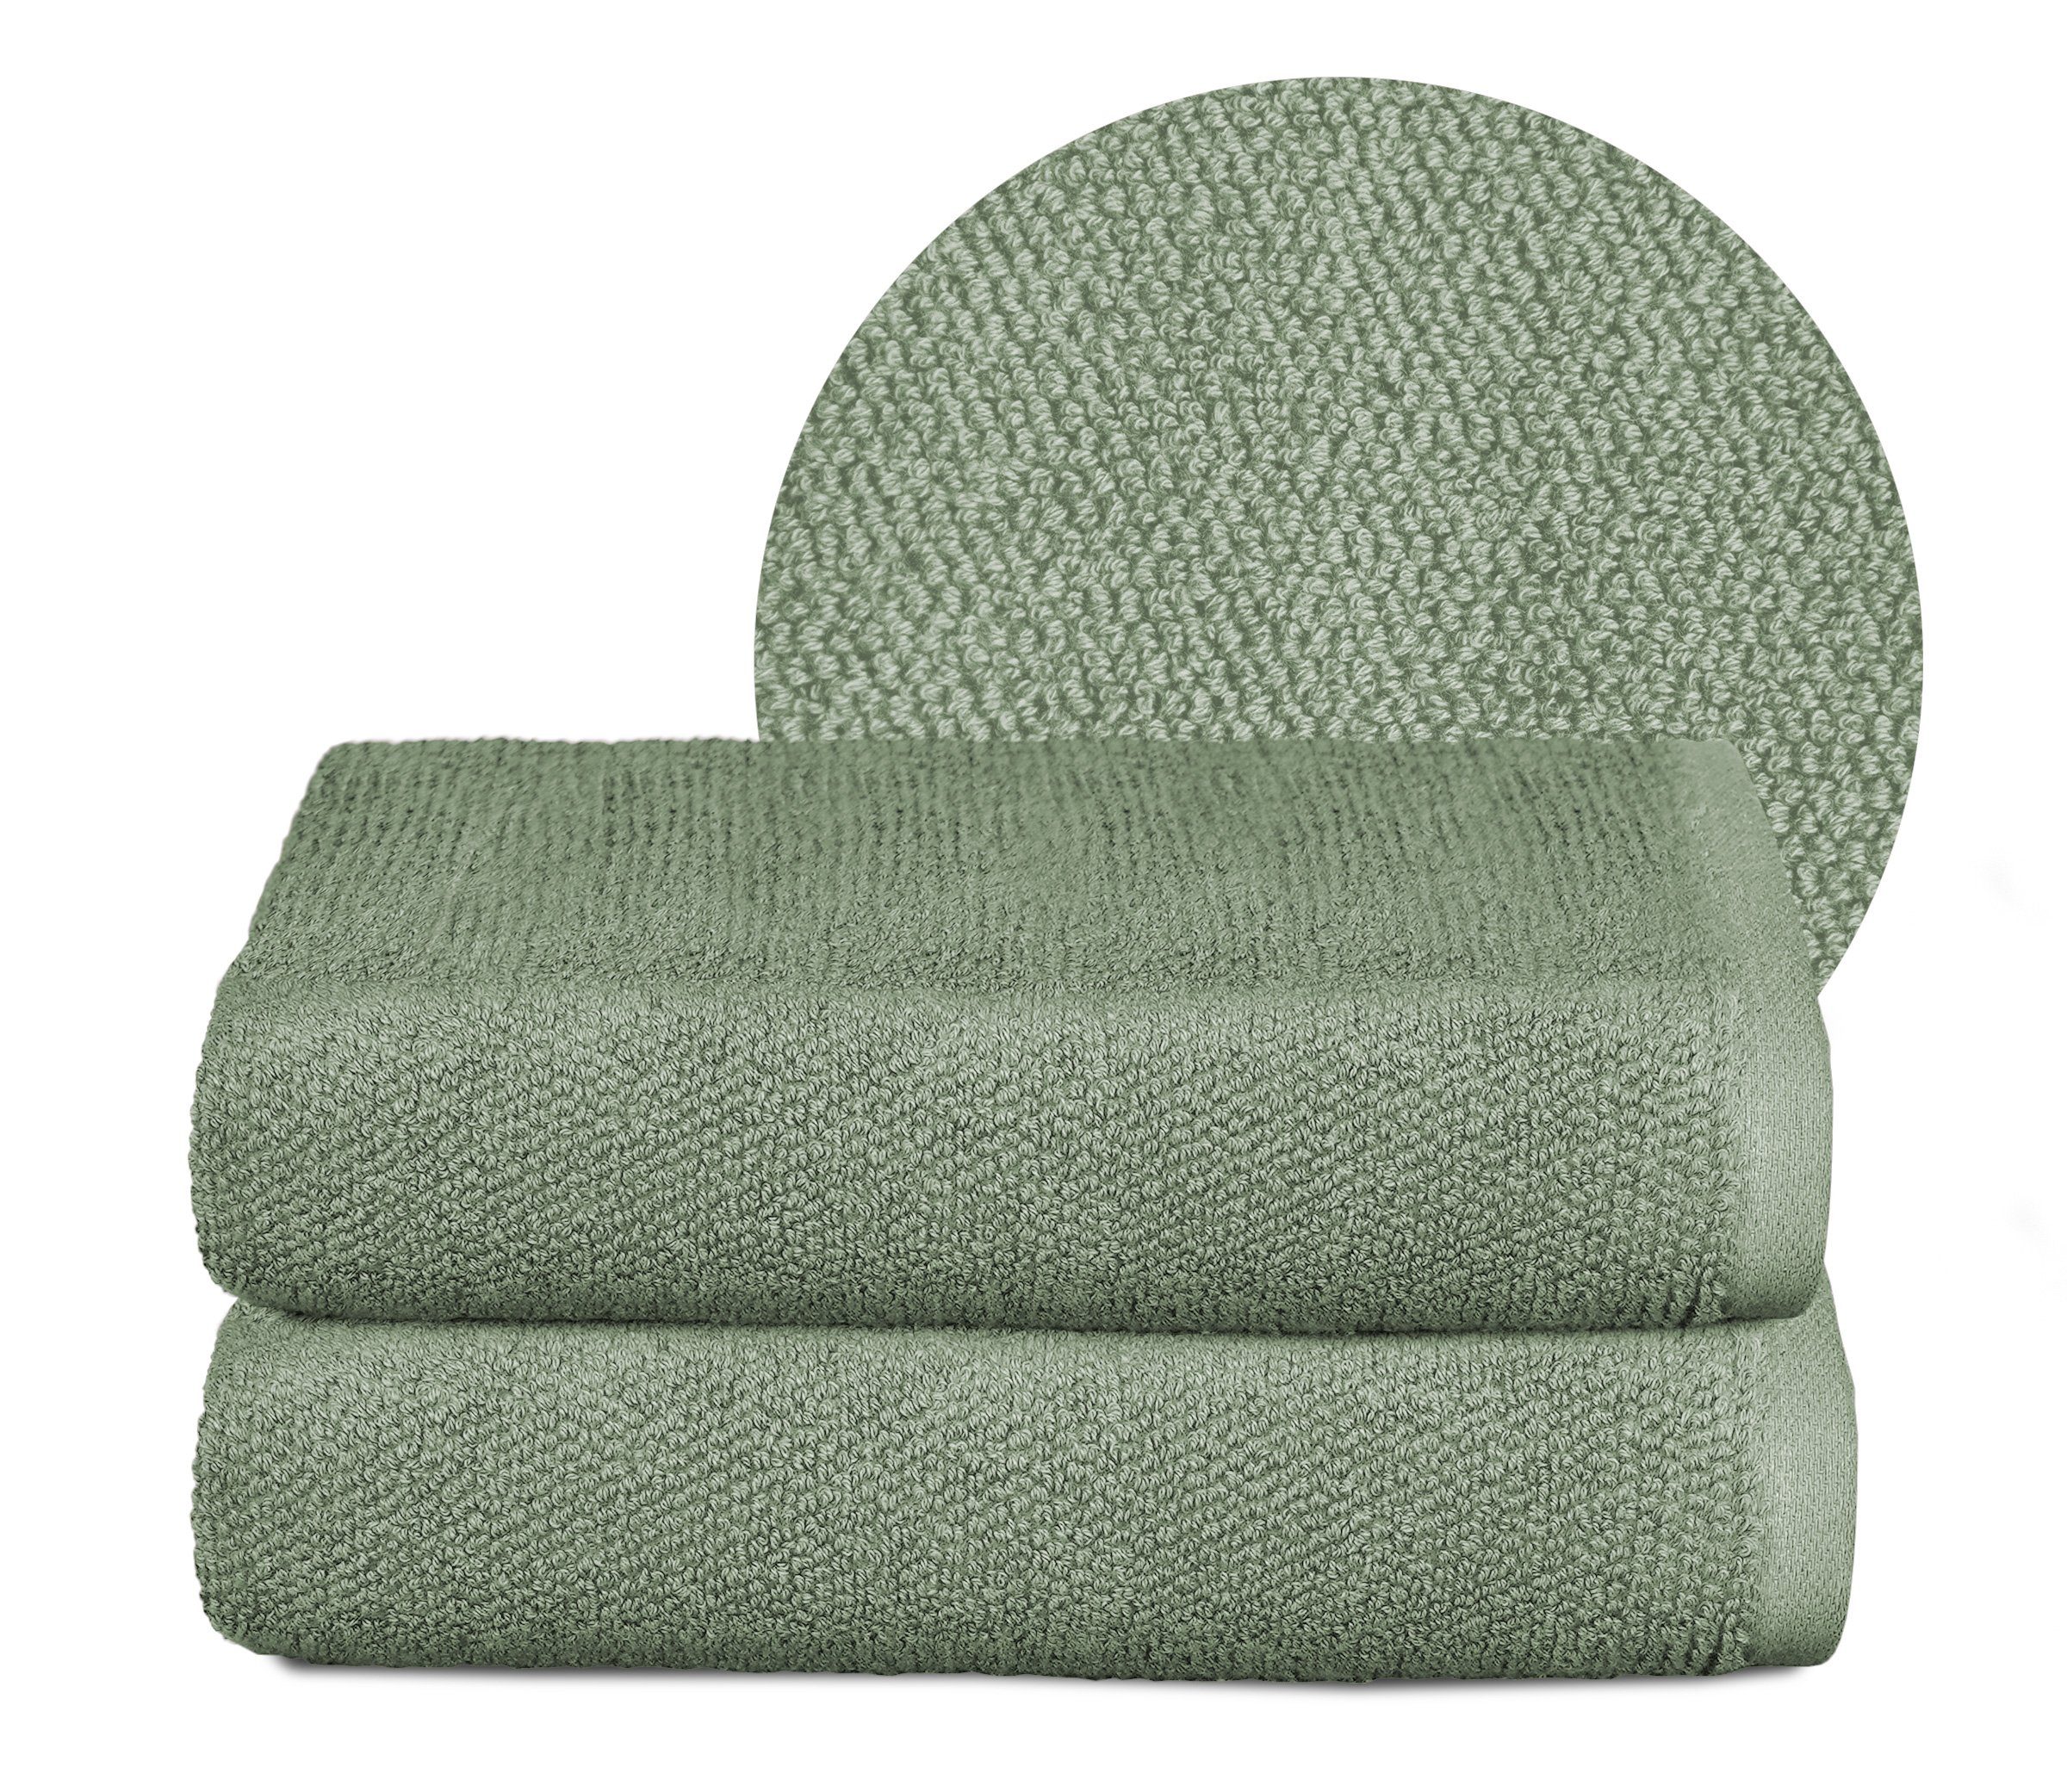 aus Beautex Frottier Set Europe, Set 550g/m) Frottier, Eisberg-grün in Set, 100% Premium Handtuch Handtuch Made (Multischlaufen-Optik, Baumwolle